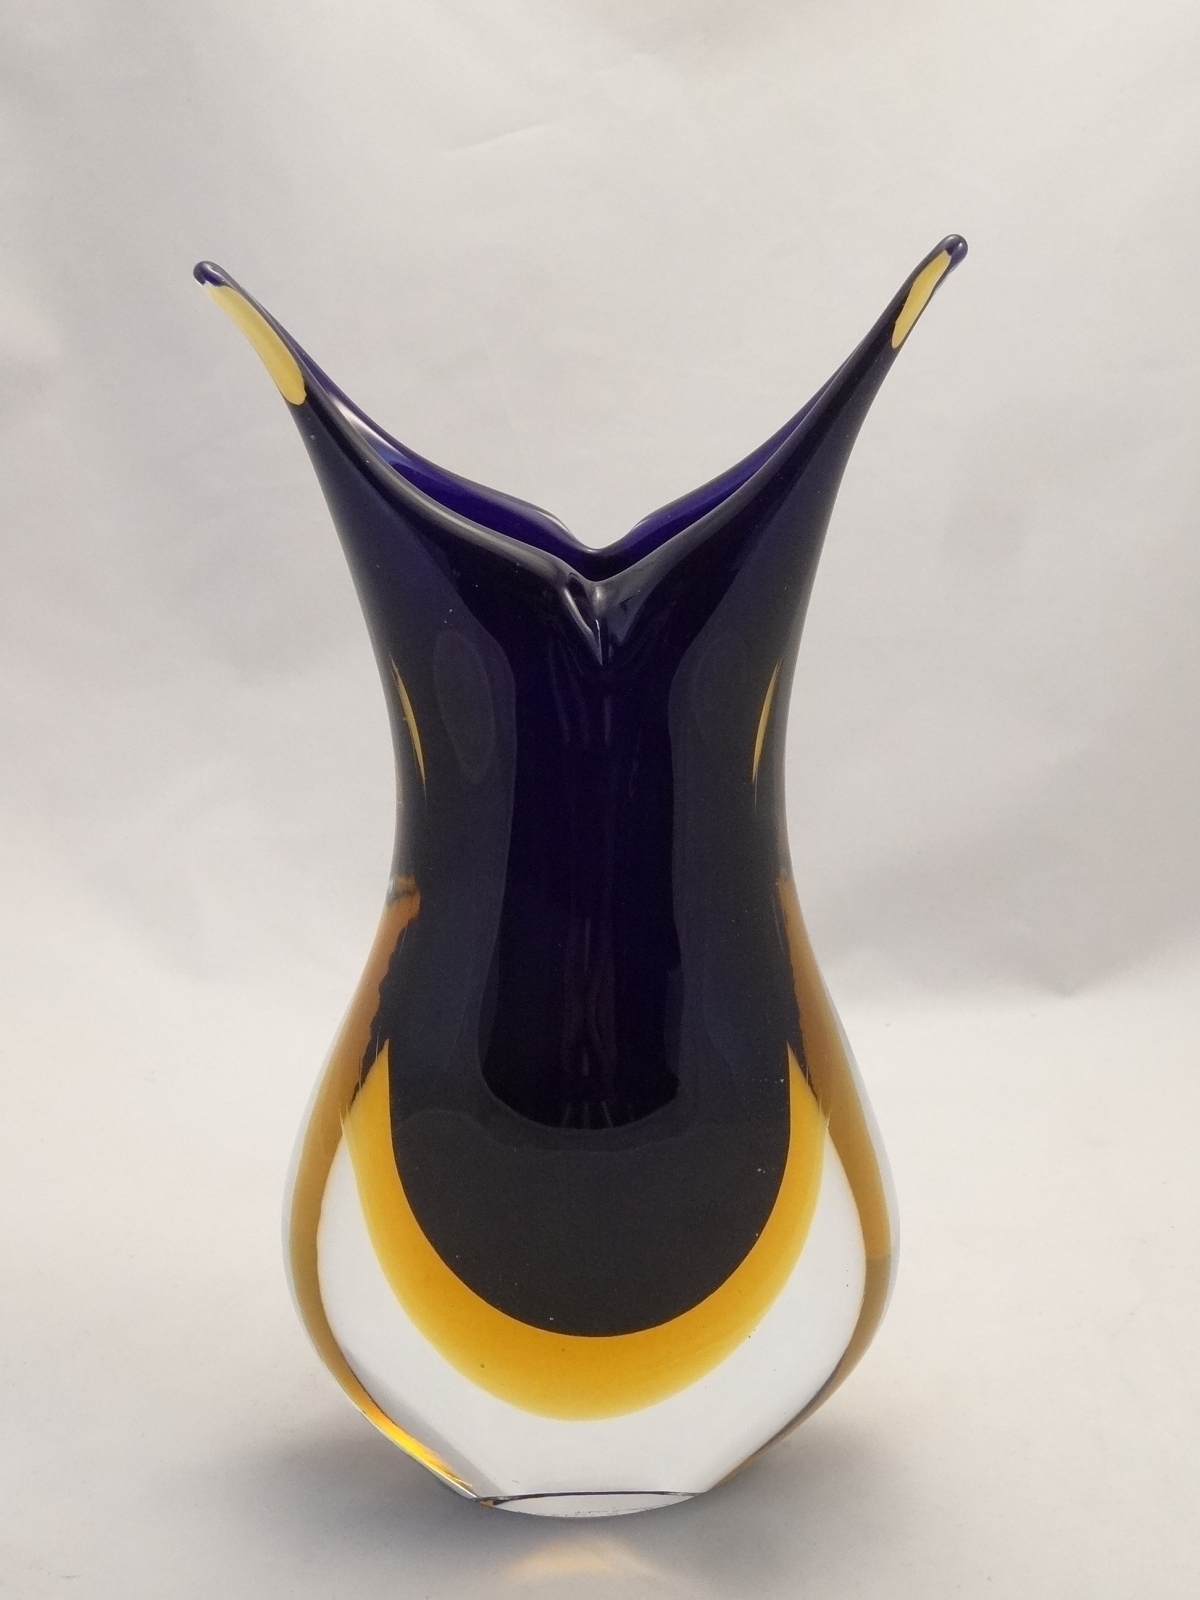 http://file.1001shops.com/MuranoGlassGifts/Murano-Glass_Murano-Glass-Cobalt-and-Blue-Murano-Glass-Art-Vases_Murano-Glass-Cobalt-Blue-Amber-Vase-3-5762506da34ee.JPG